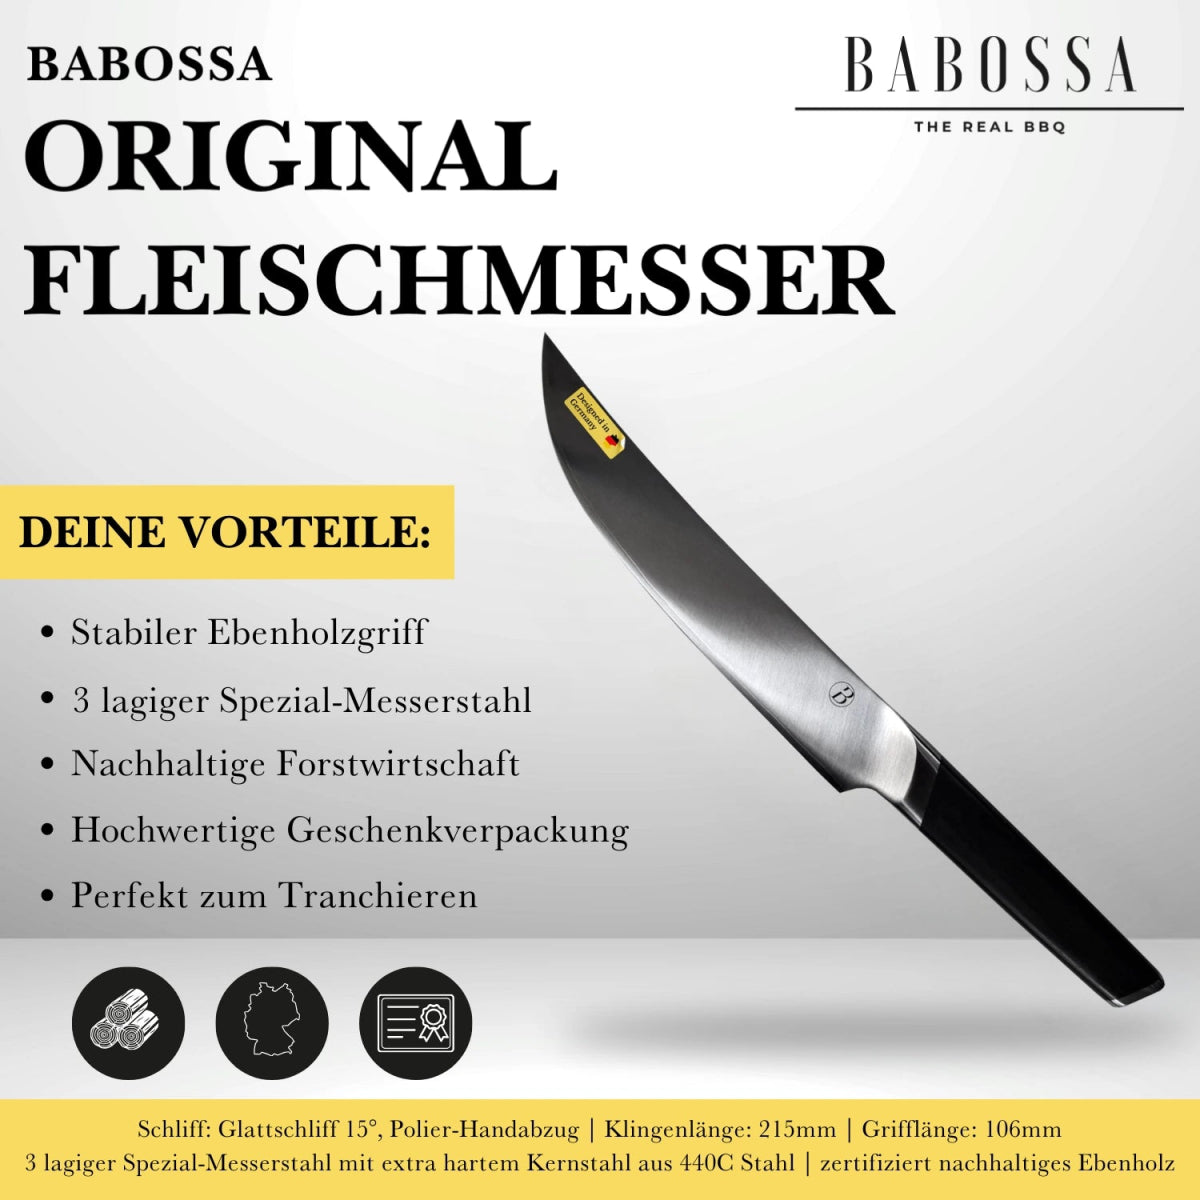 "Original" Fleischmesser - BABOSSA"Original" FleischmesserMesserBABOSSABABOSSA